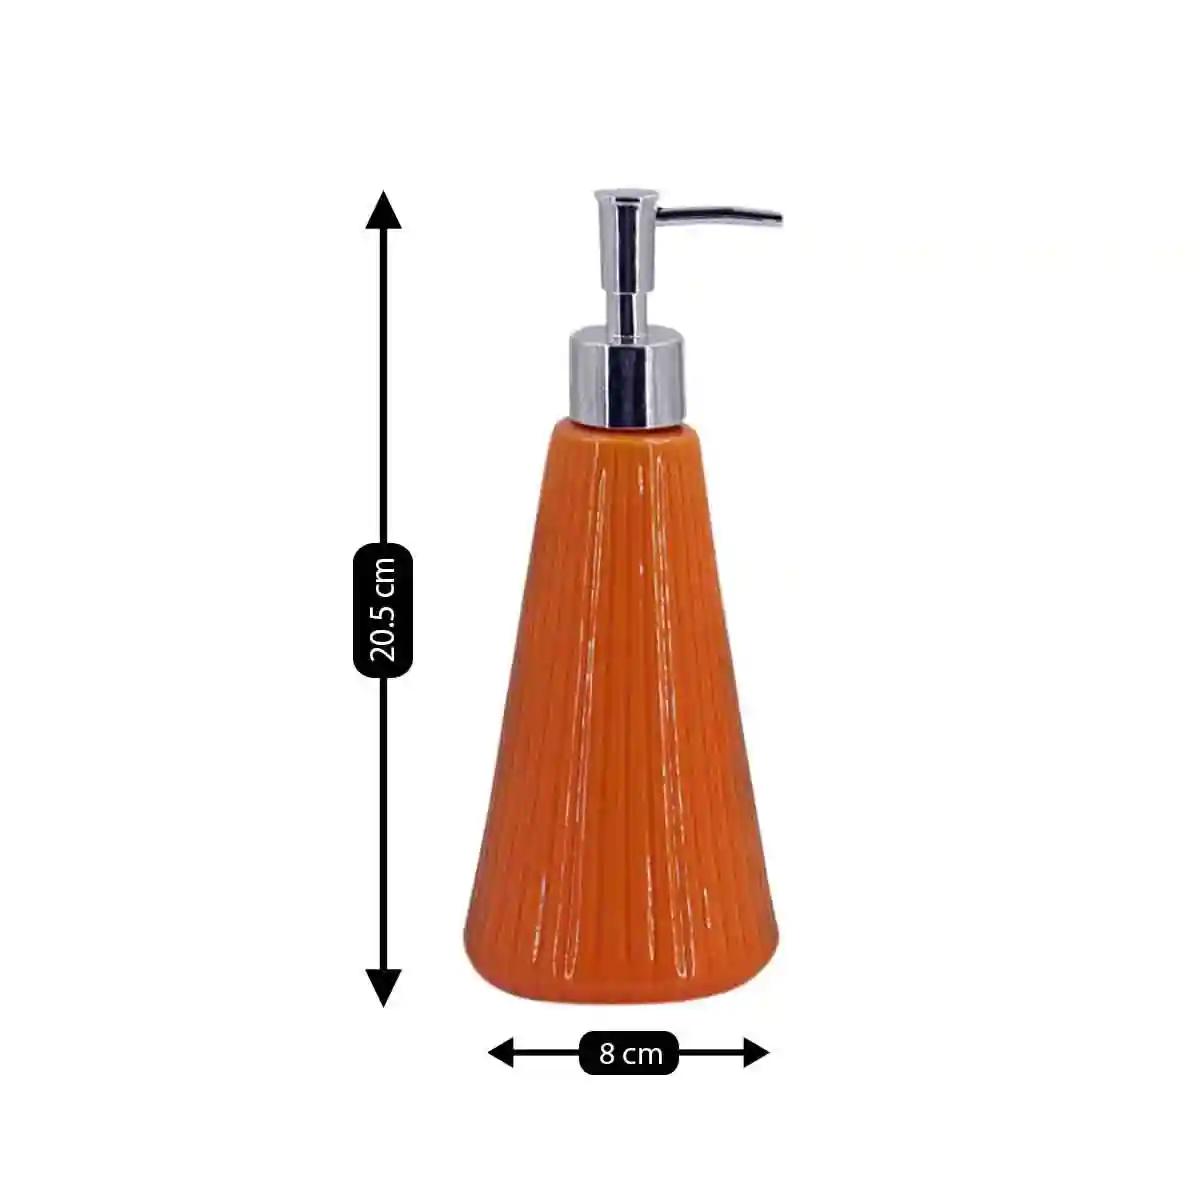 Kookee Ceramic Soap Dispenser for Bathroom handwash, refillable pump bottle for Kitchen hand wash basin, Set of 2 - Orange (8054)